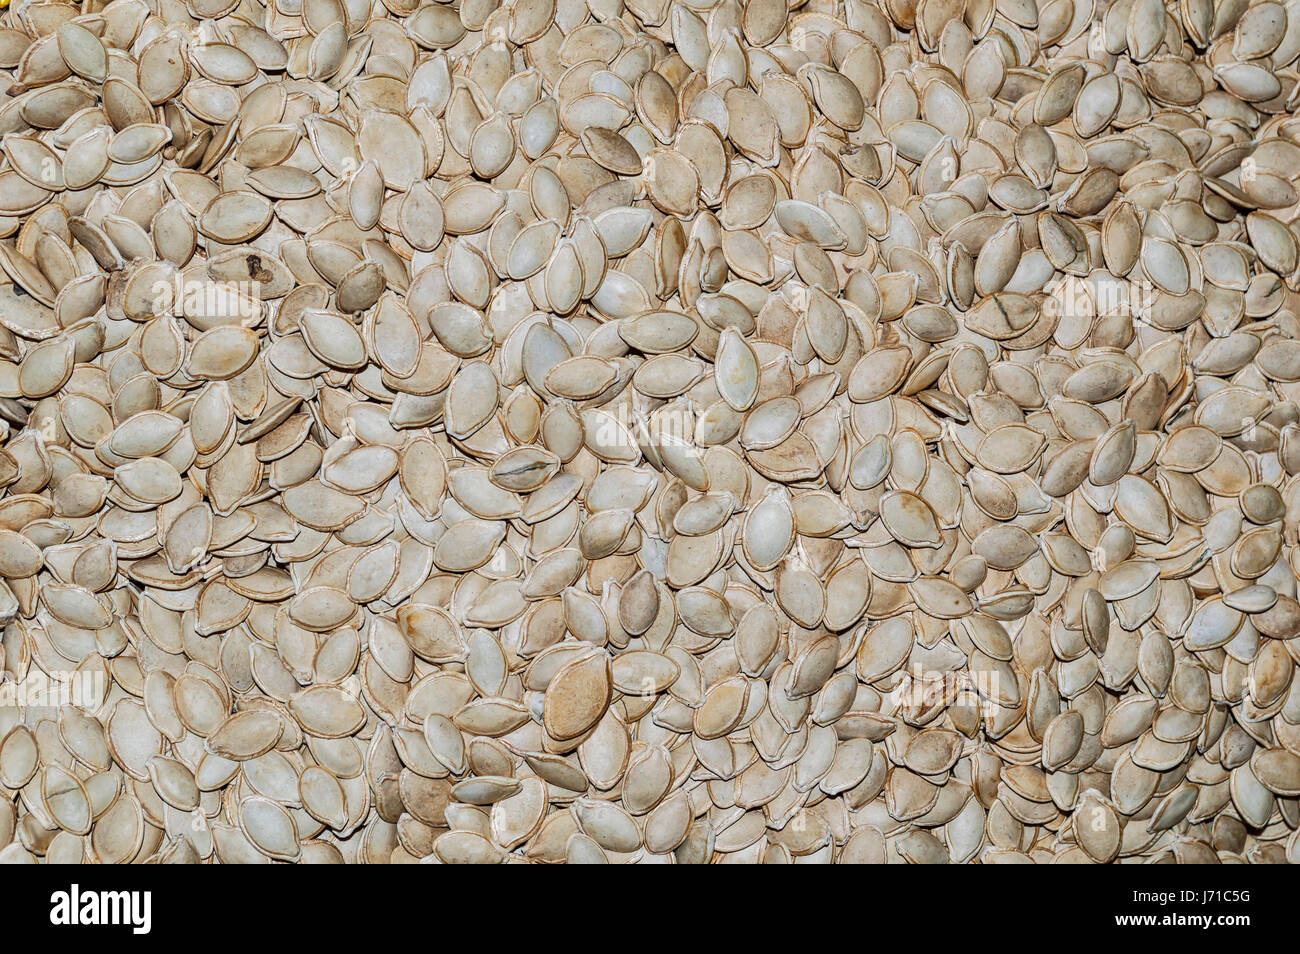 Close up de graines de citrouille, de l'alimentation arrière-plan, Vue de dessus Banque D'Images